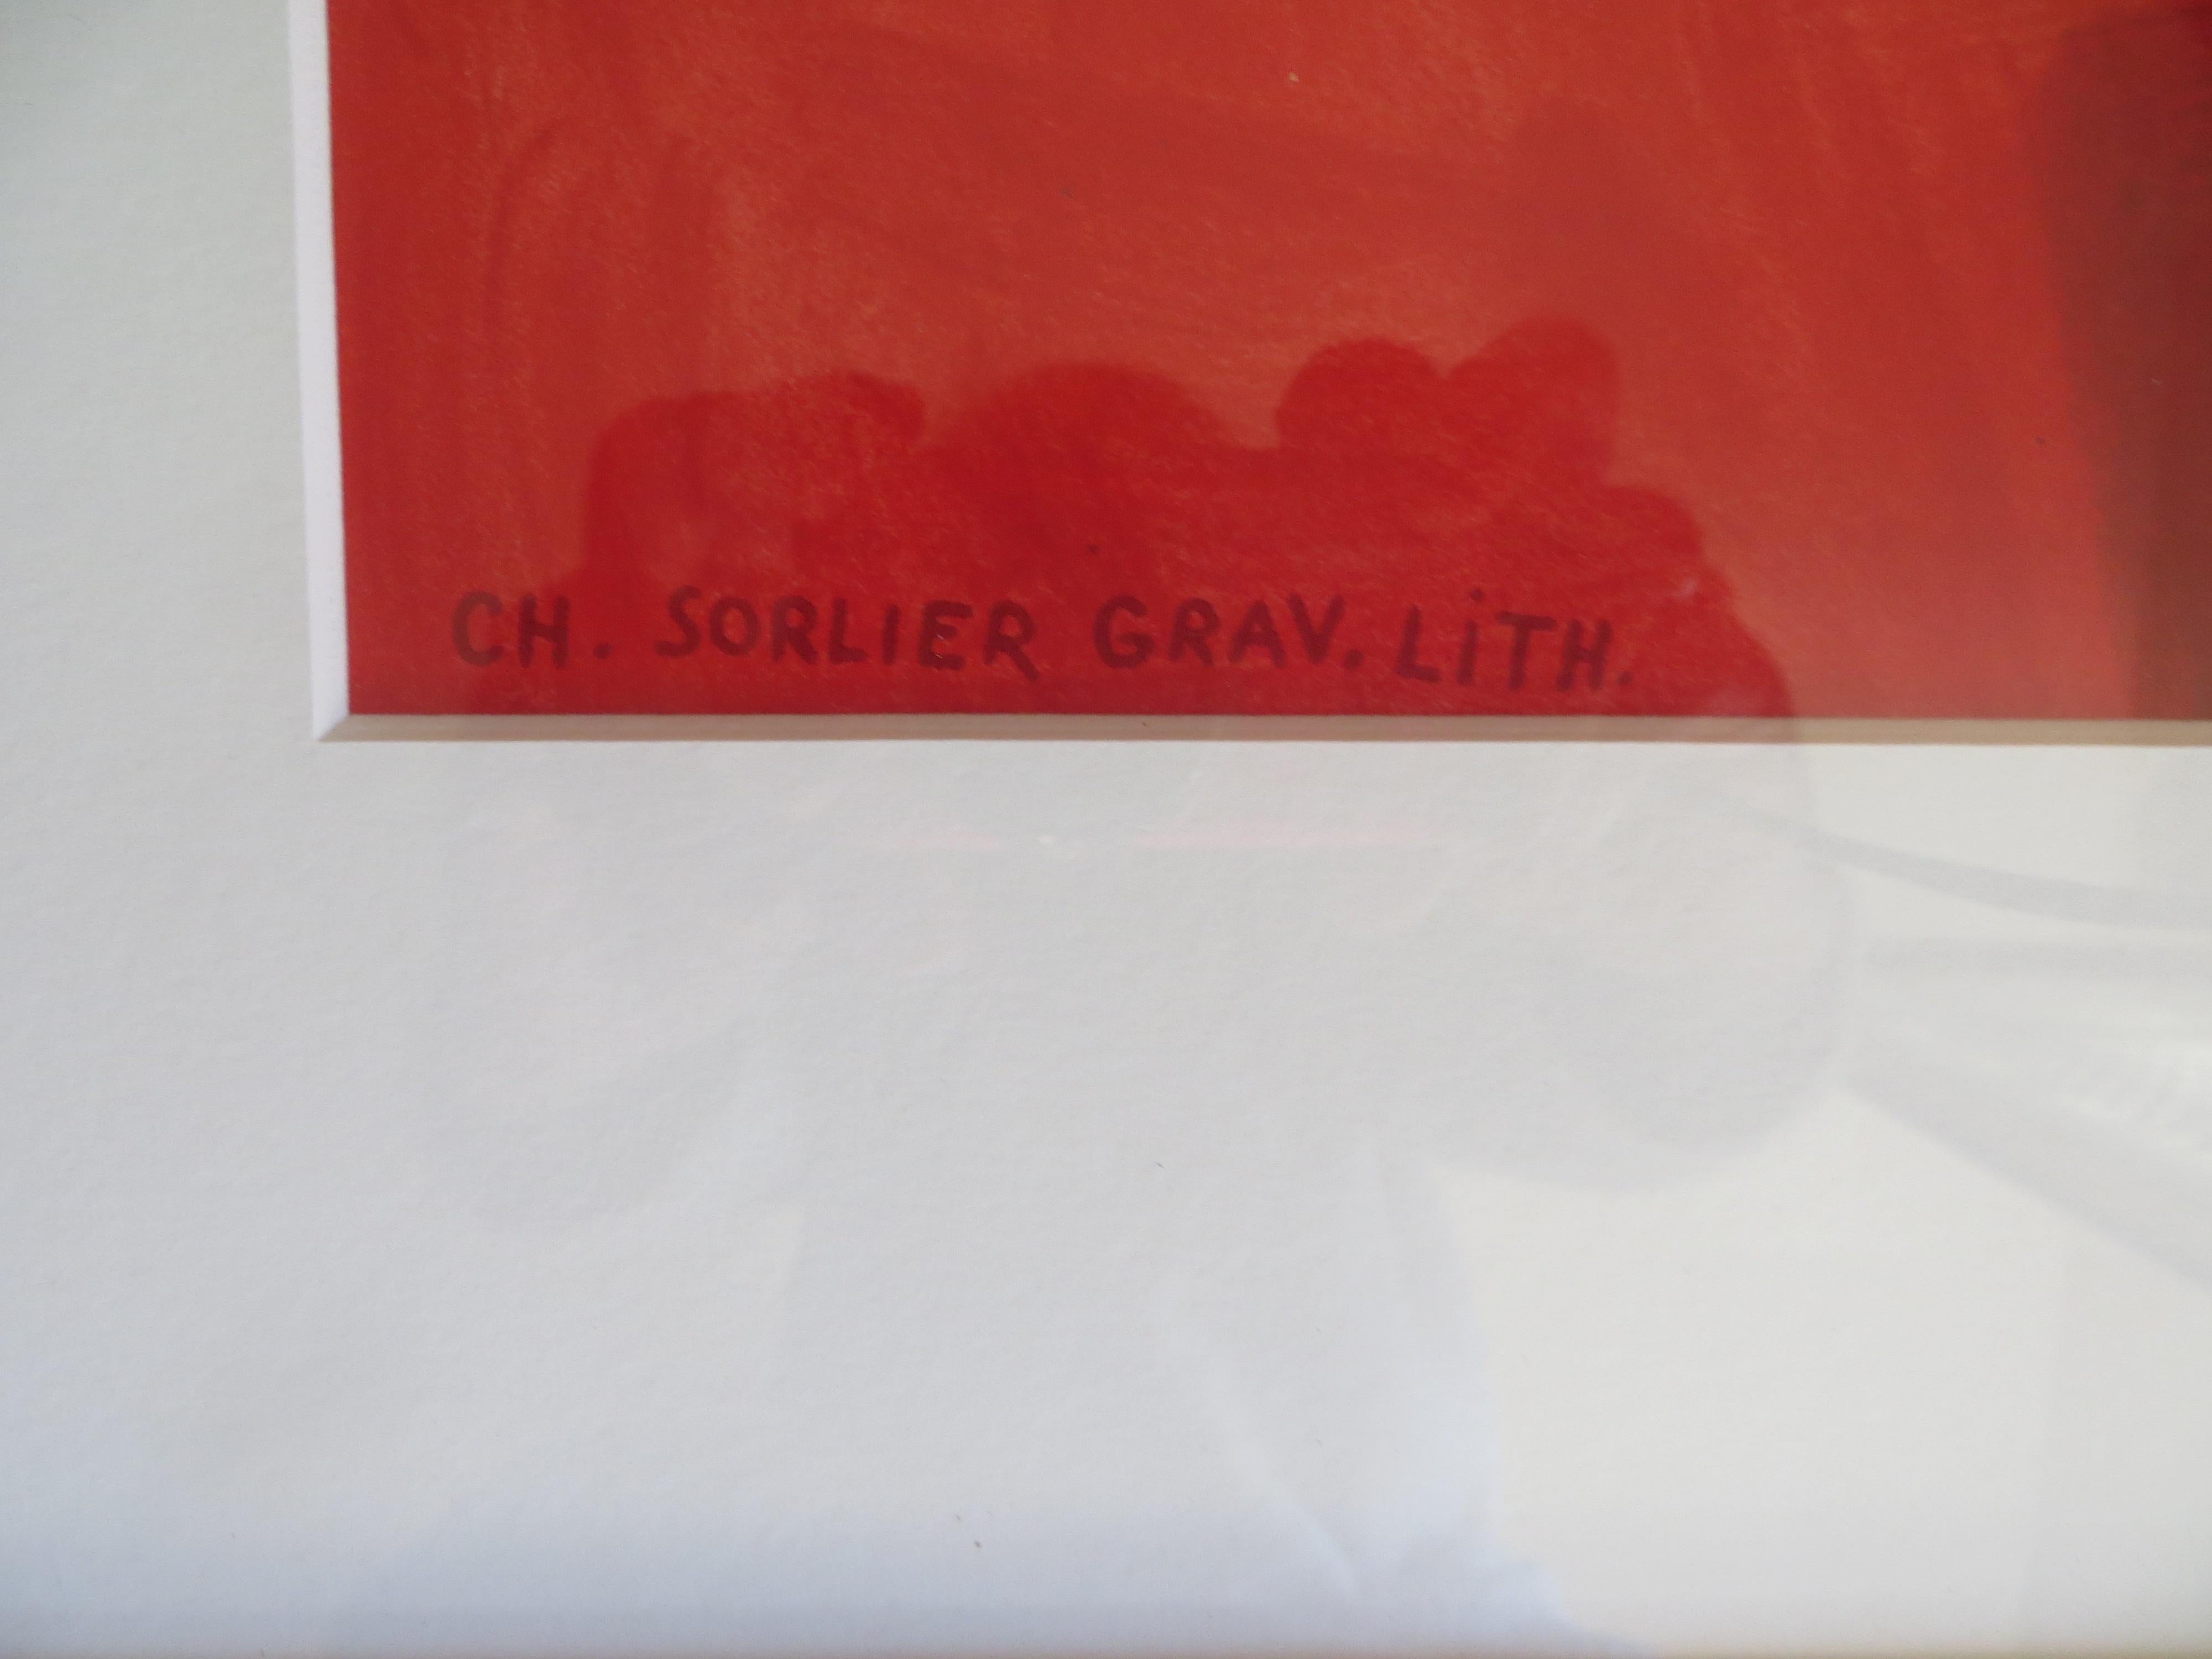 Serge POLIAKOFF - Composition gouache 1969
Lithographie en couleurs sur papier Arches d'après la gouache de 1969.
Signé dans la plaque en bas à droite.
Publié à l'occasion des expositions itinérantes de Serge Poliakoff en 1975.
La plaque